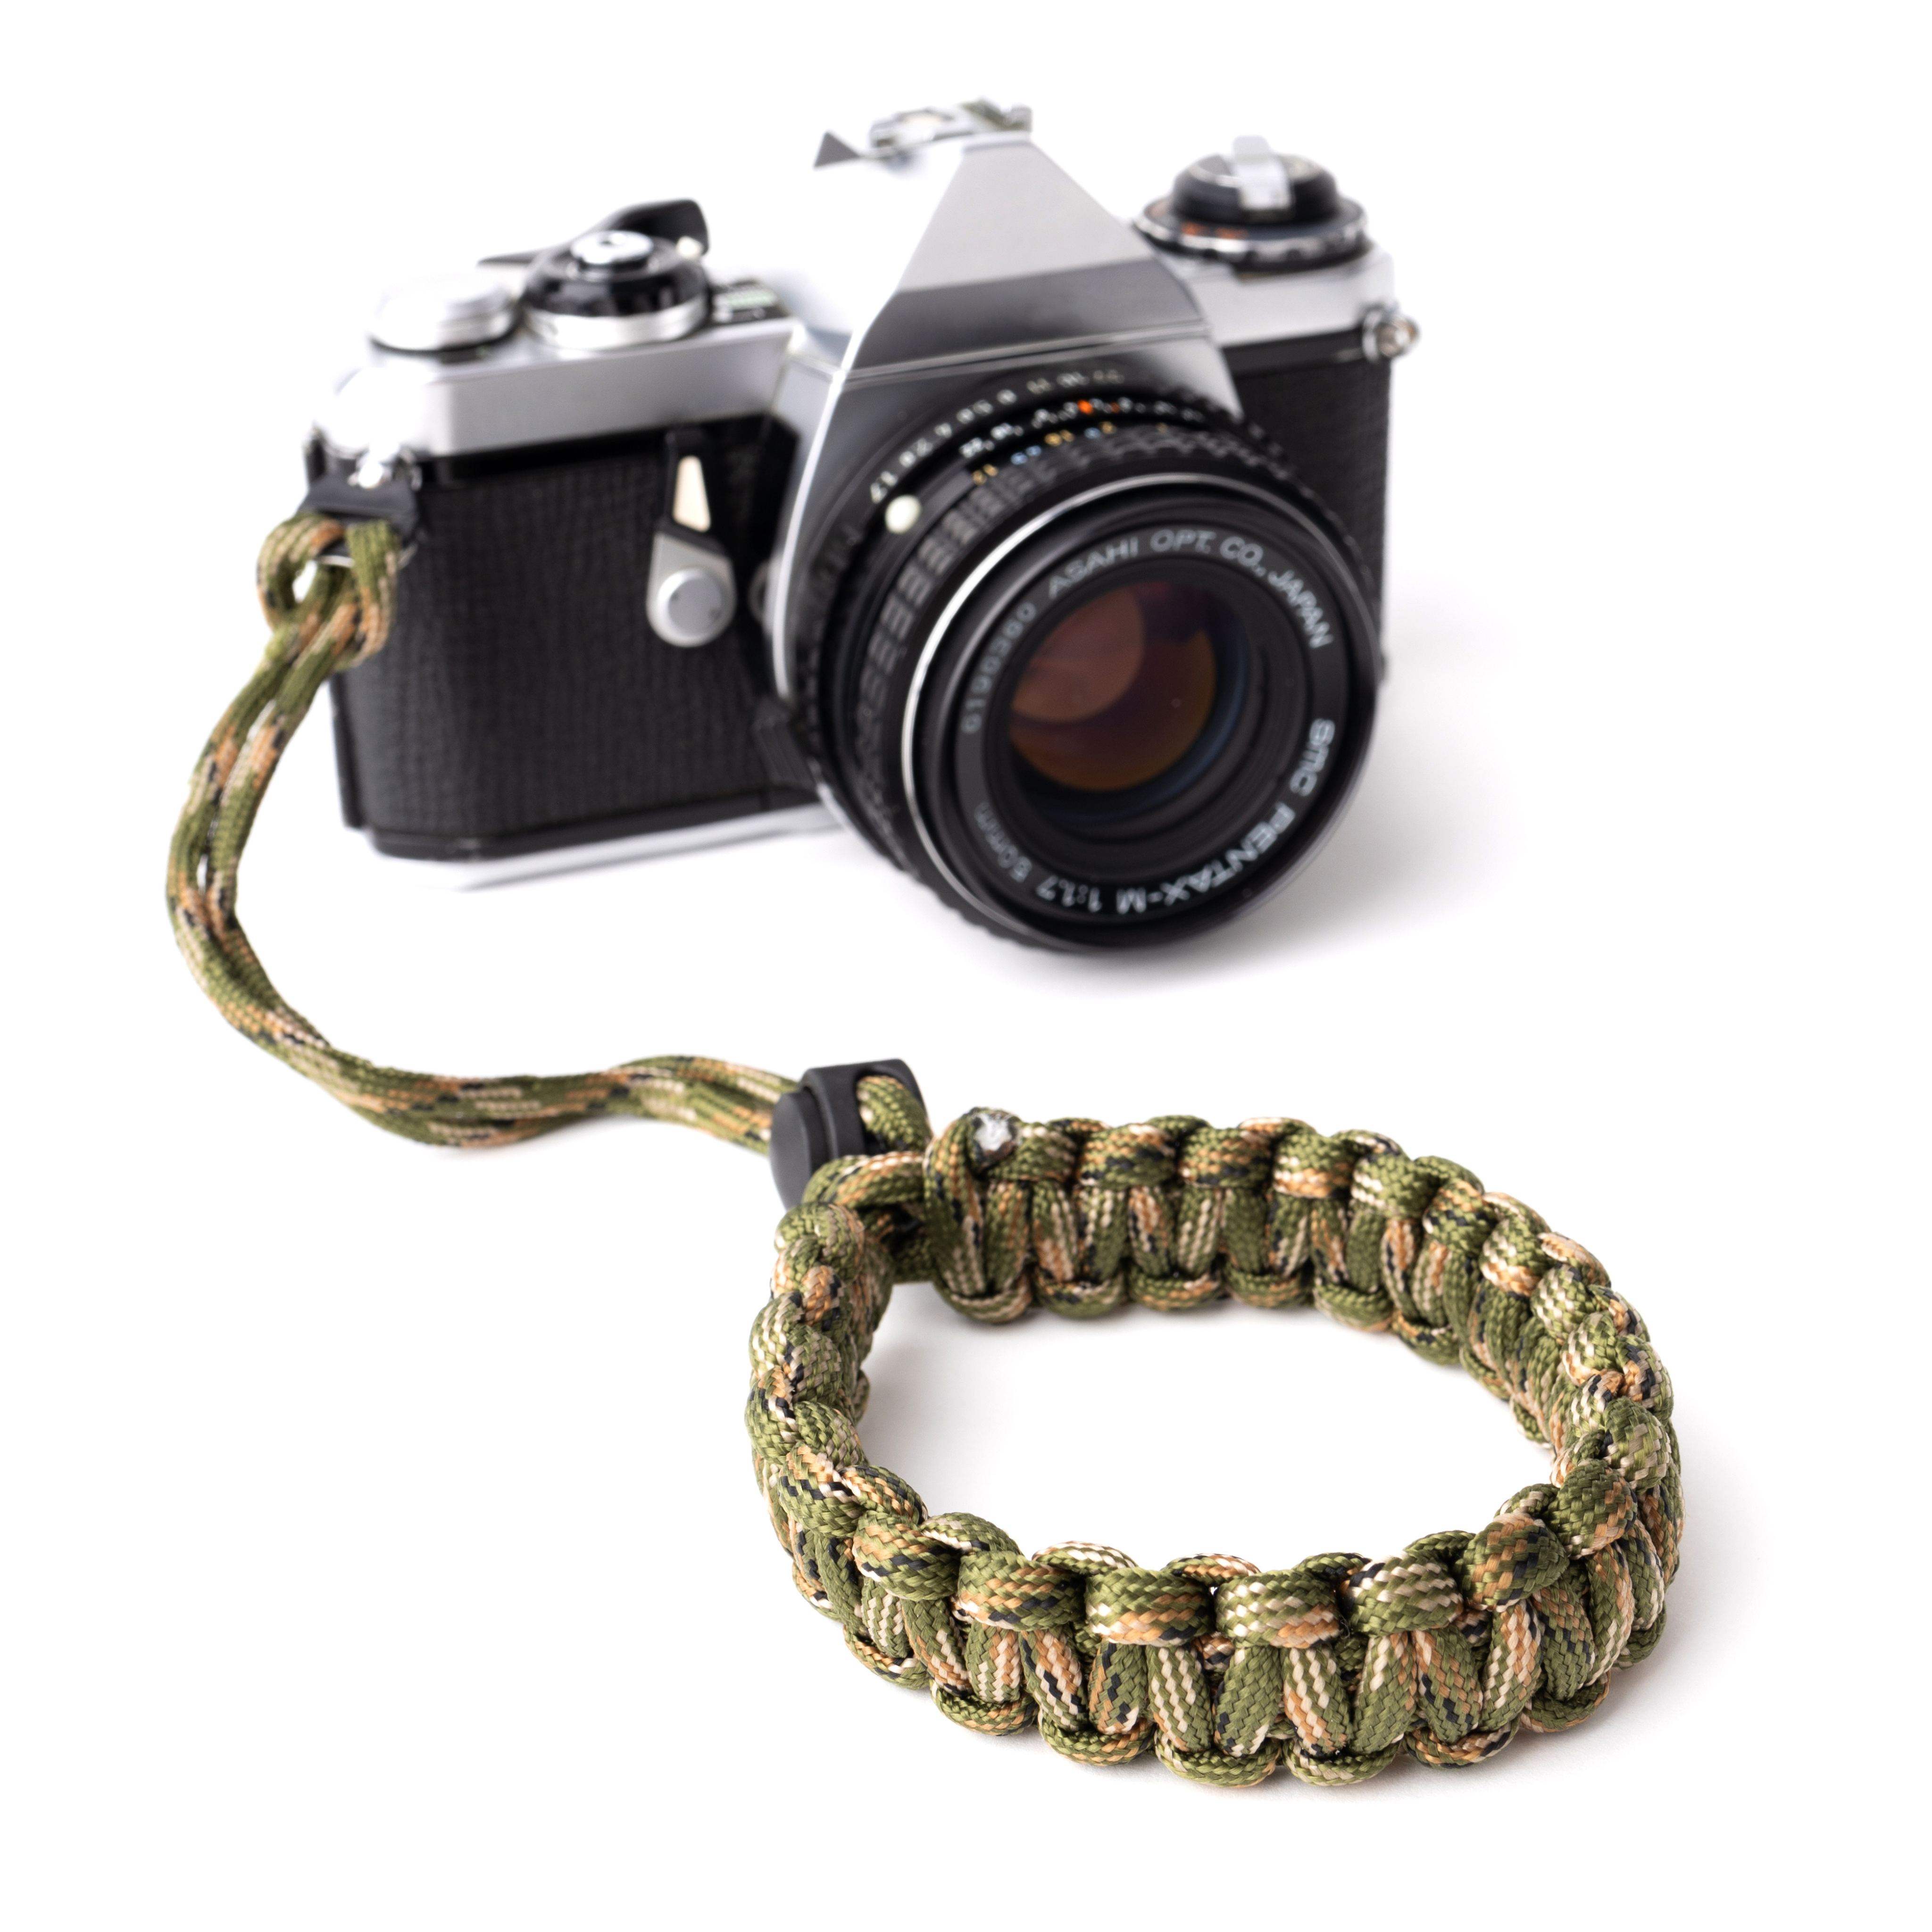 LENS-AID Kamera Handschlaufe aus fürs Handschlaufe, Paracord Camouflage/Grün Handgelenk, Kamera